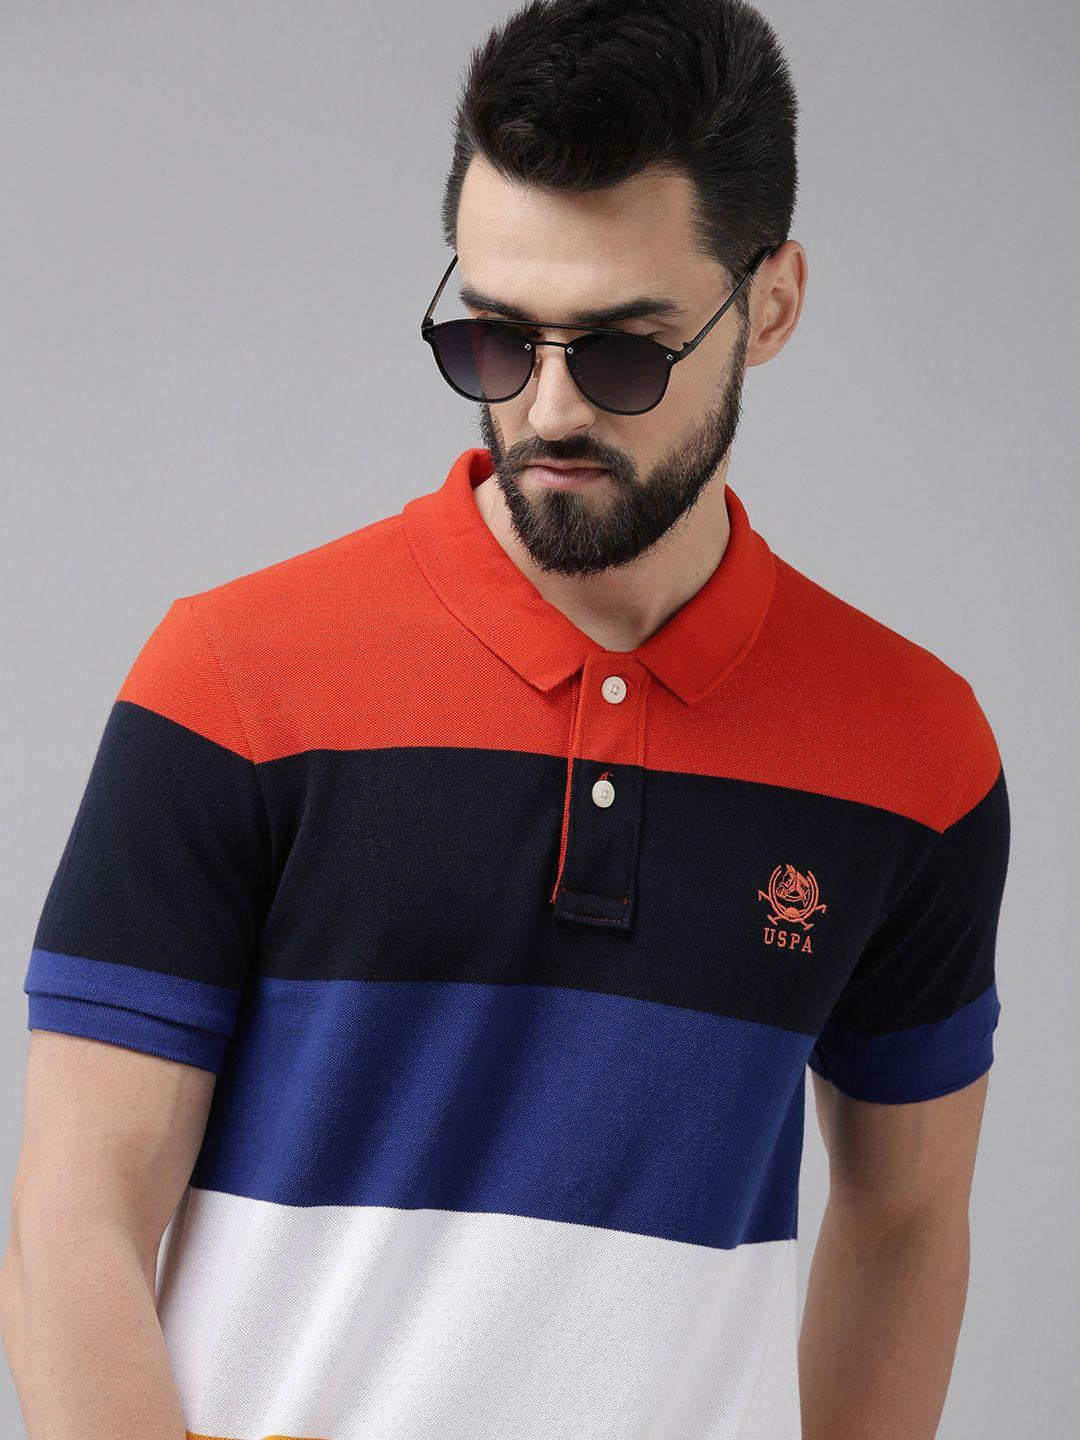 u s polo assn men orange & navy blue colourblocked polo collar casual t-shirt